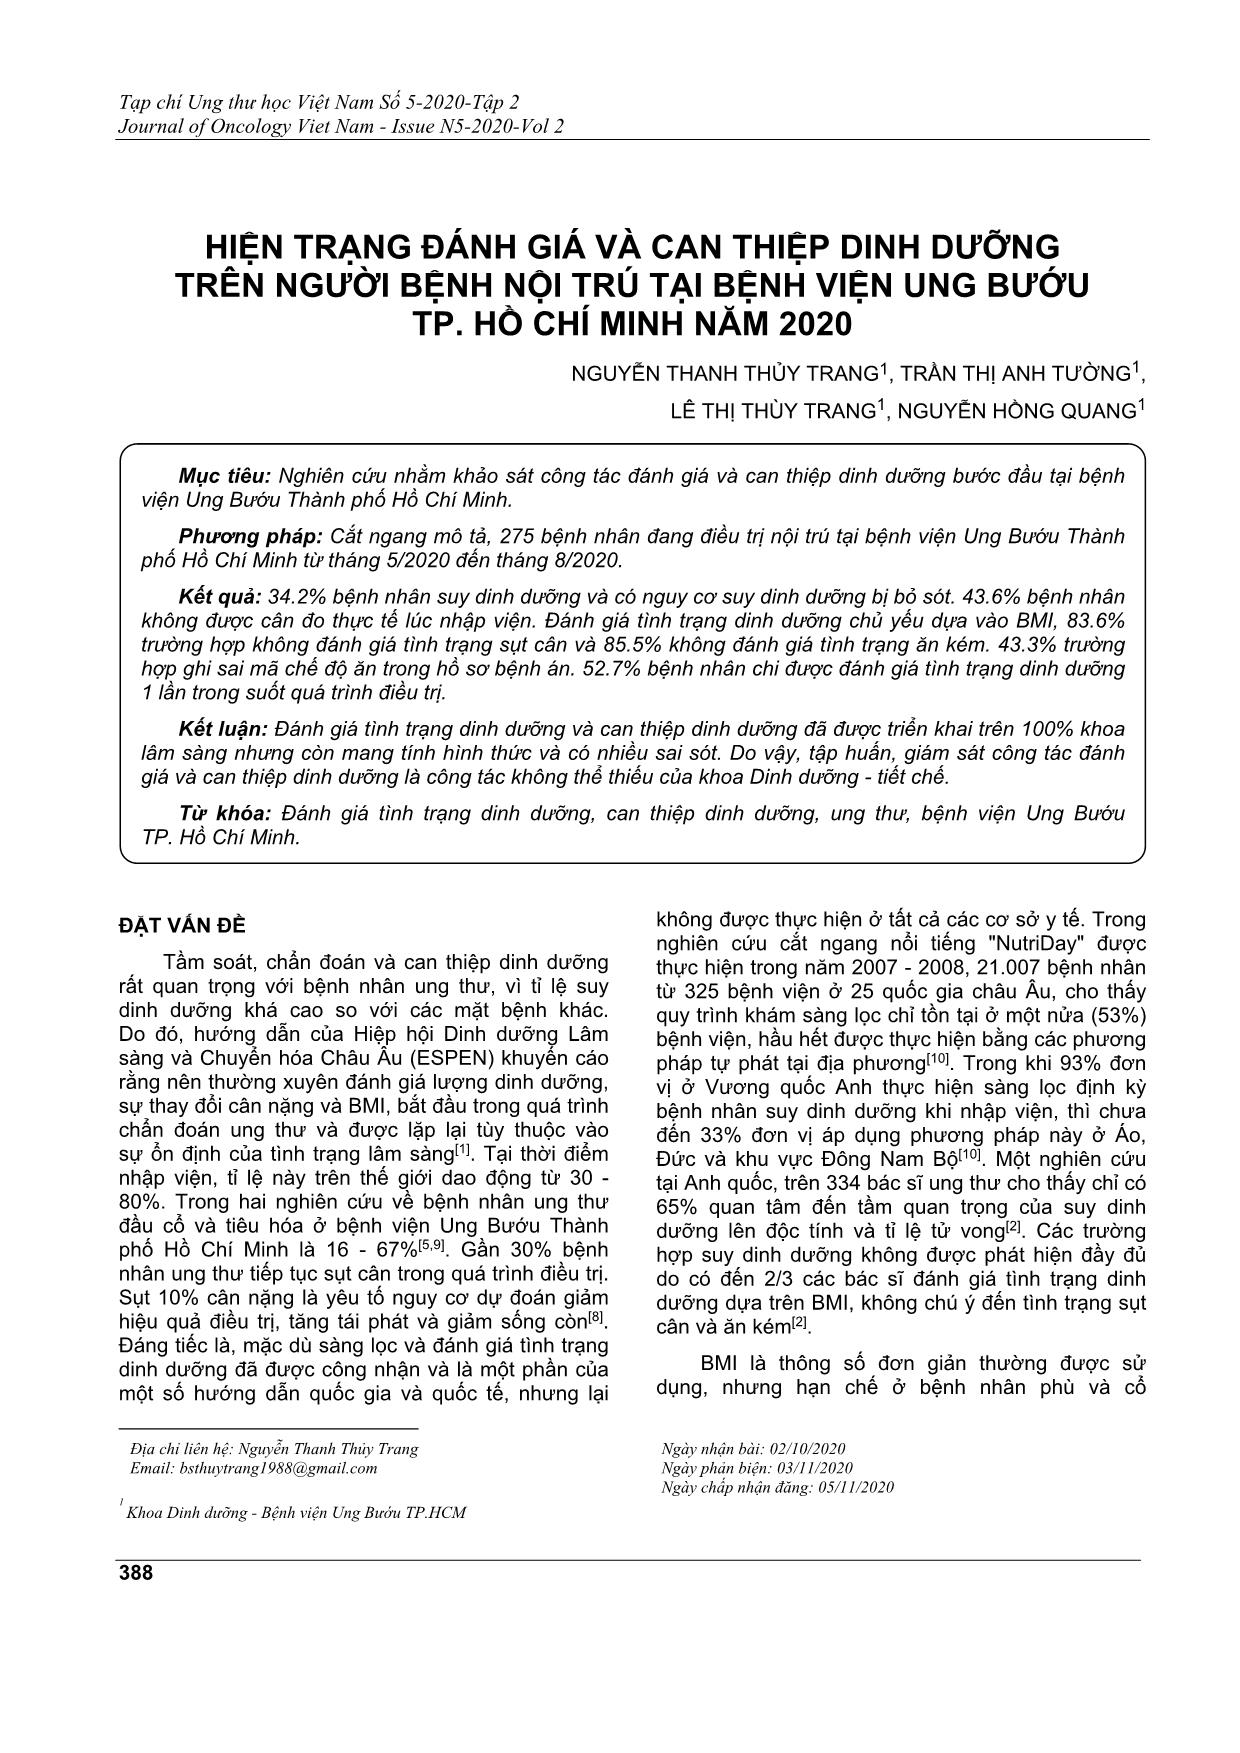 Hiện trạng đánh giá và can thiệp dinh dưỡng trên người bệnh nội trú tại bệnh viện ung bướu TP. Hồ Chí Minh năm 2020 trang 1